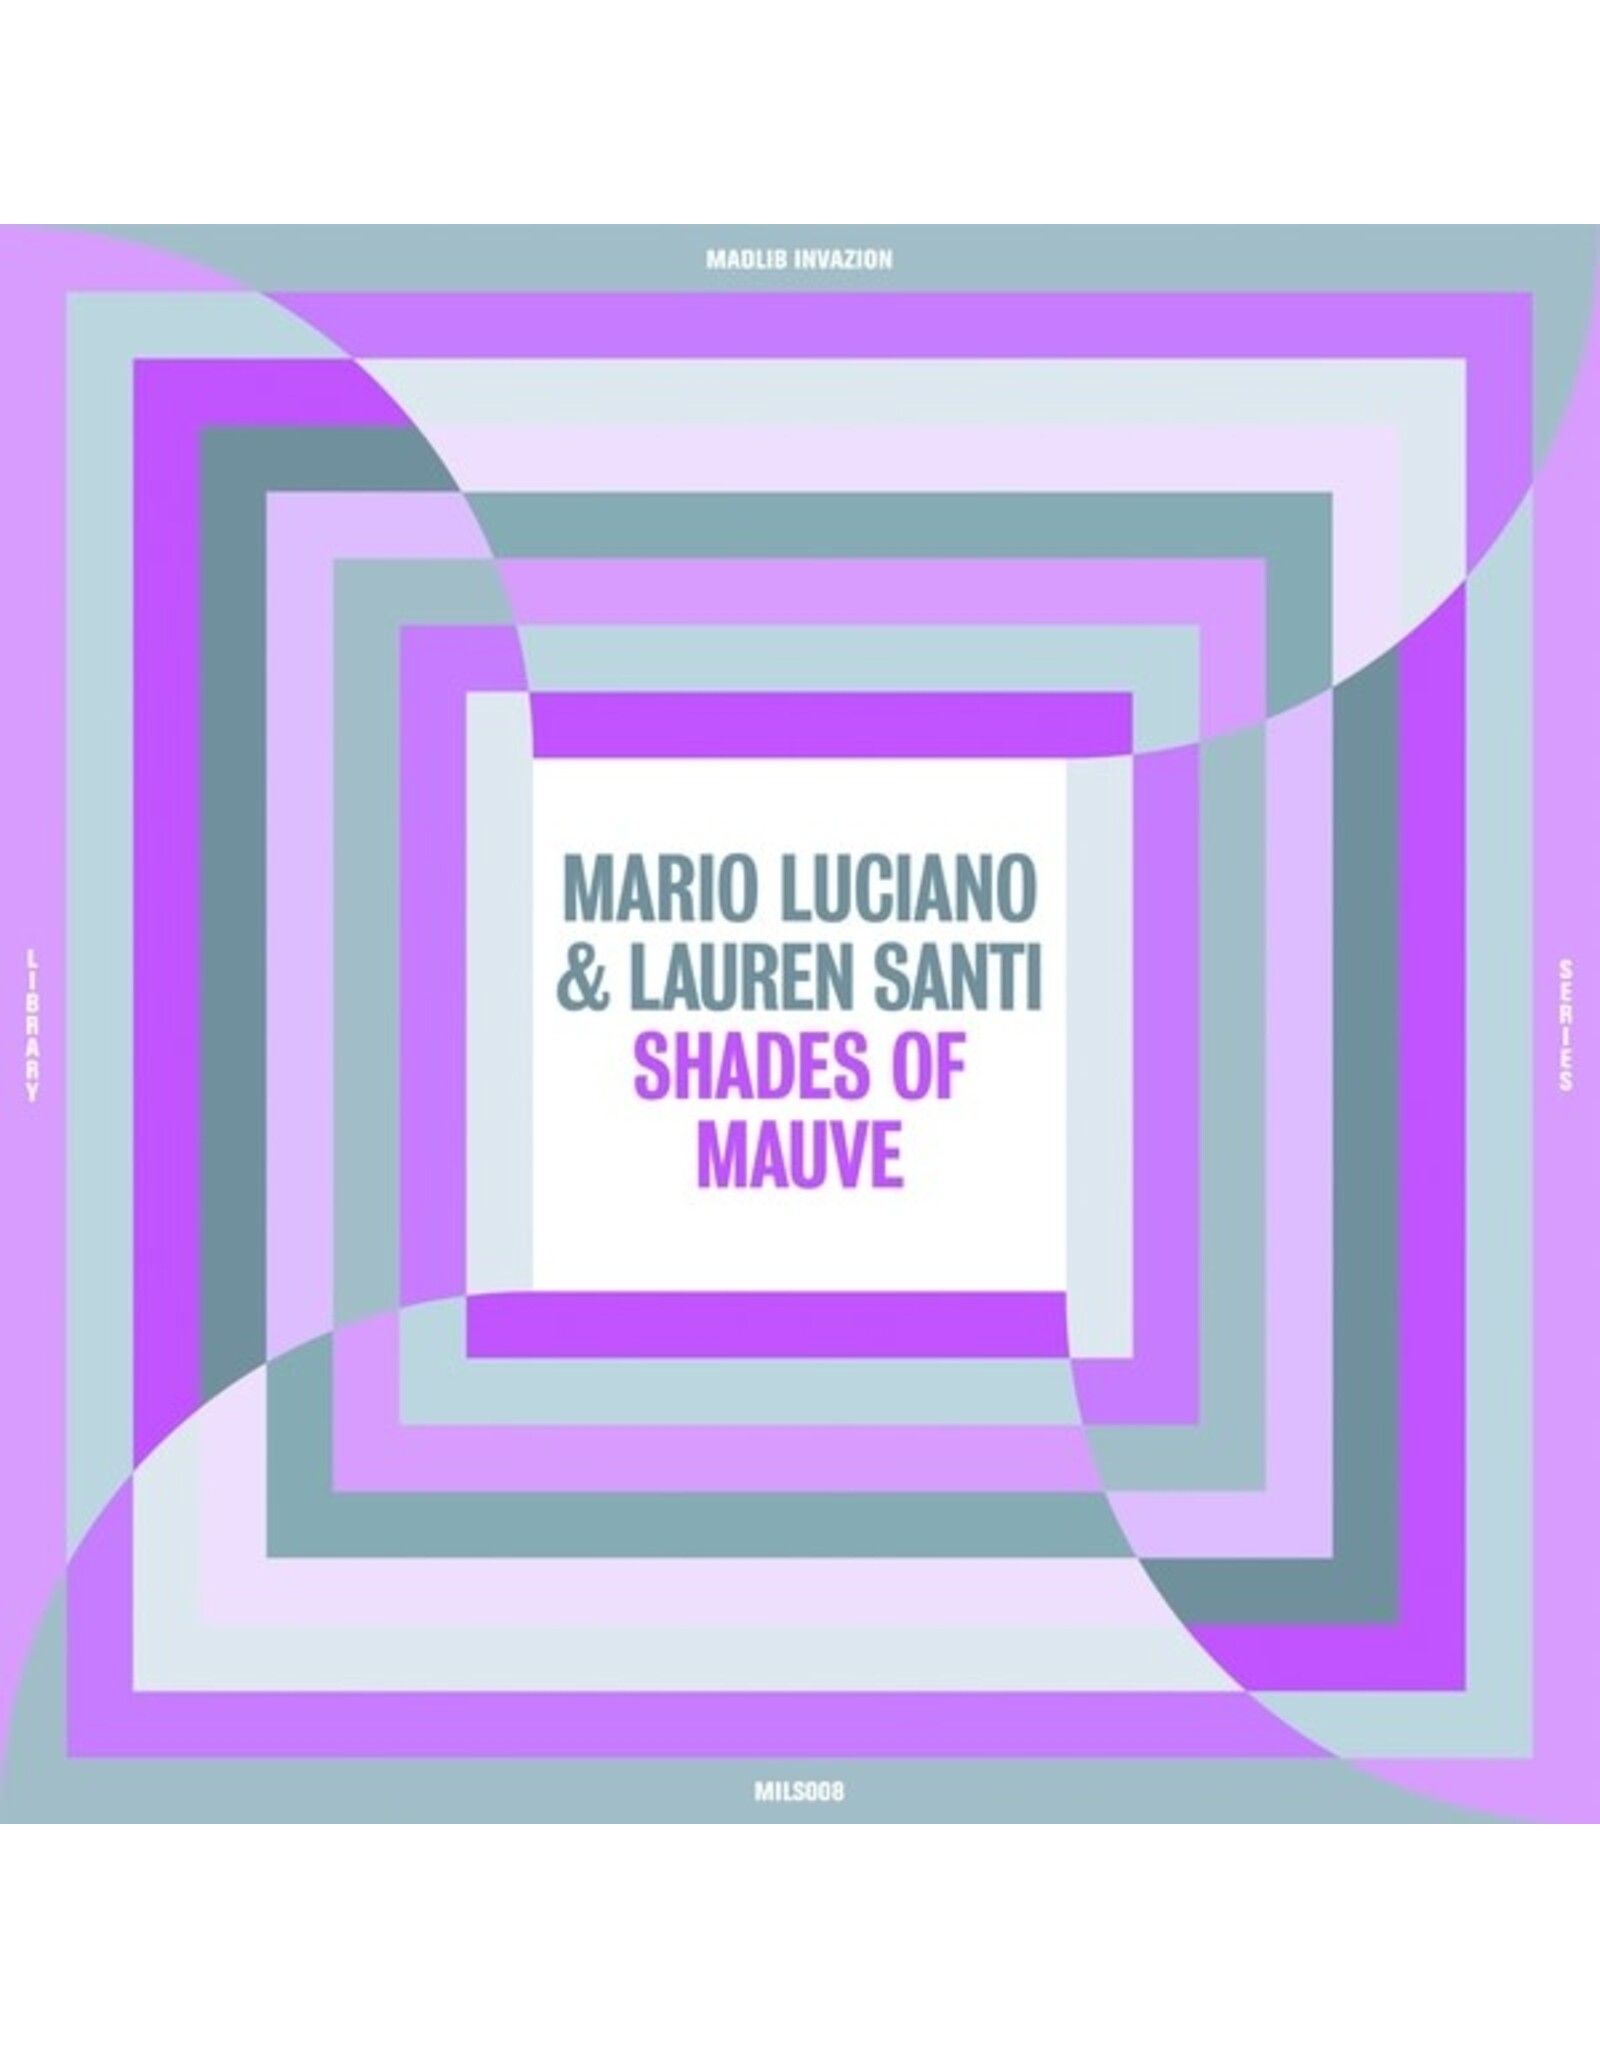 Madlib Invazion Luciano, Mario & Lauren Santi: Shades Of Mauve LP